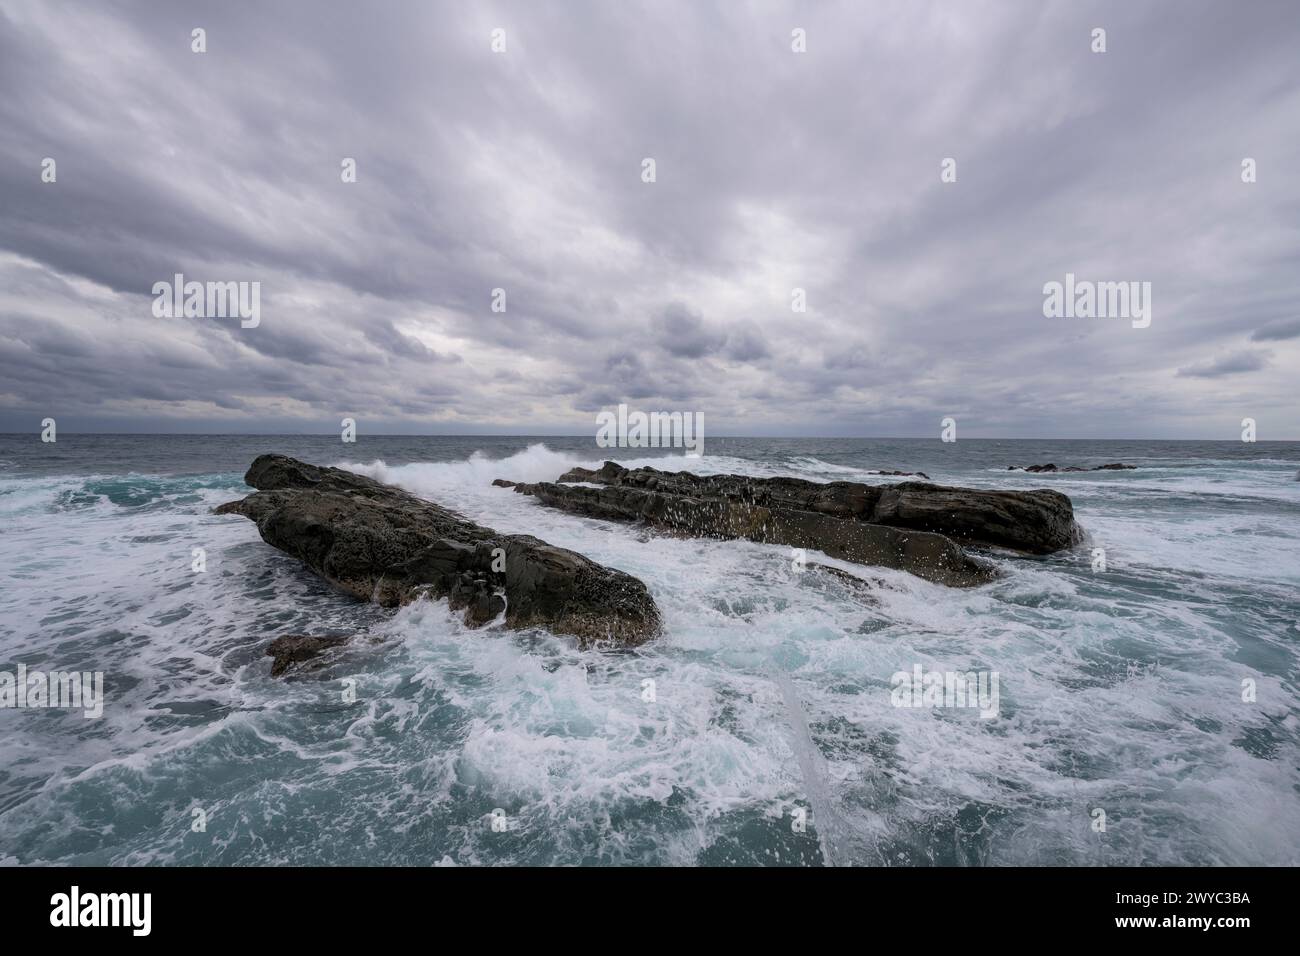 Des formations rocheuses captivantes sur fond de puissantes vagues à sommet blanc sous un ciel orageux Banque D'Images